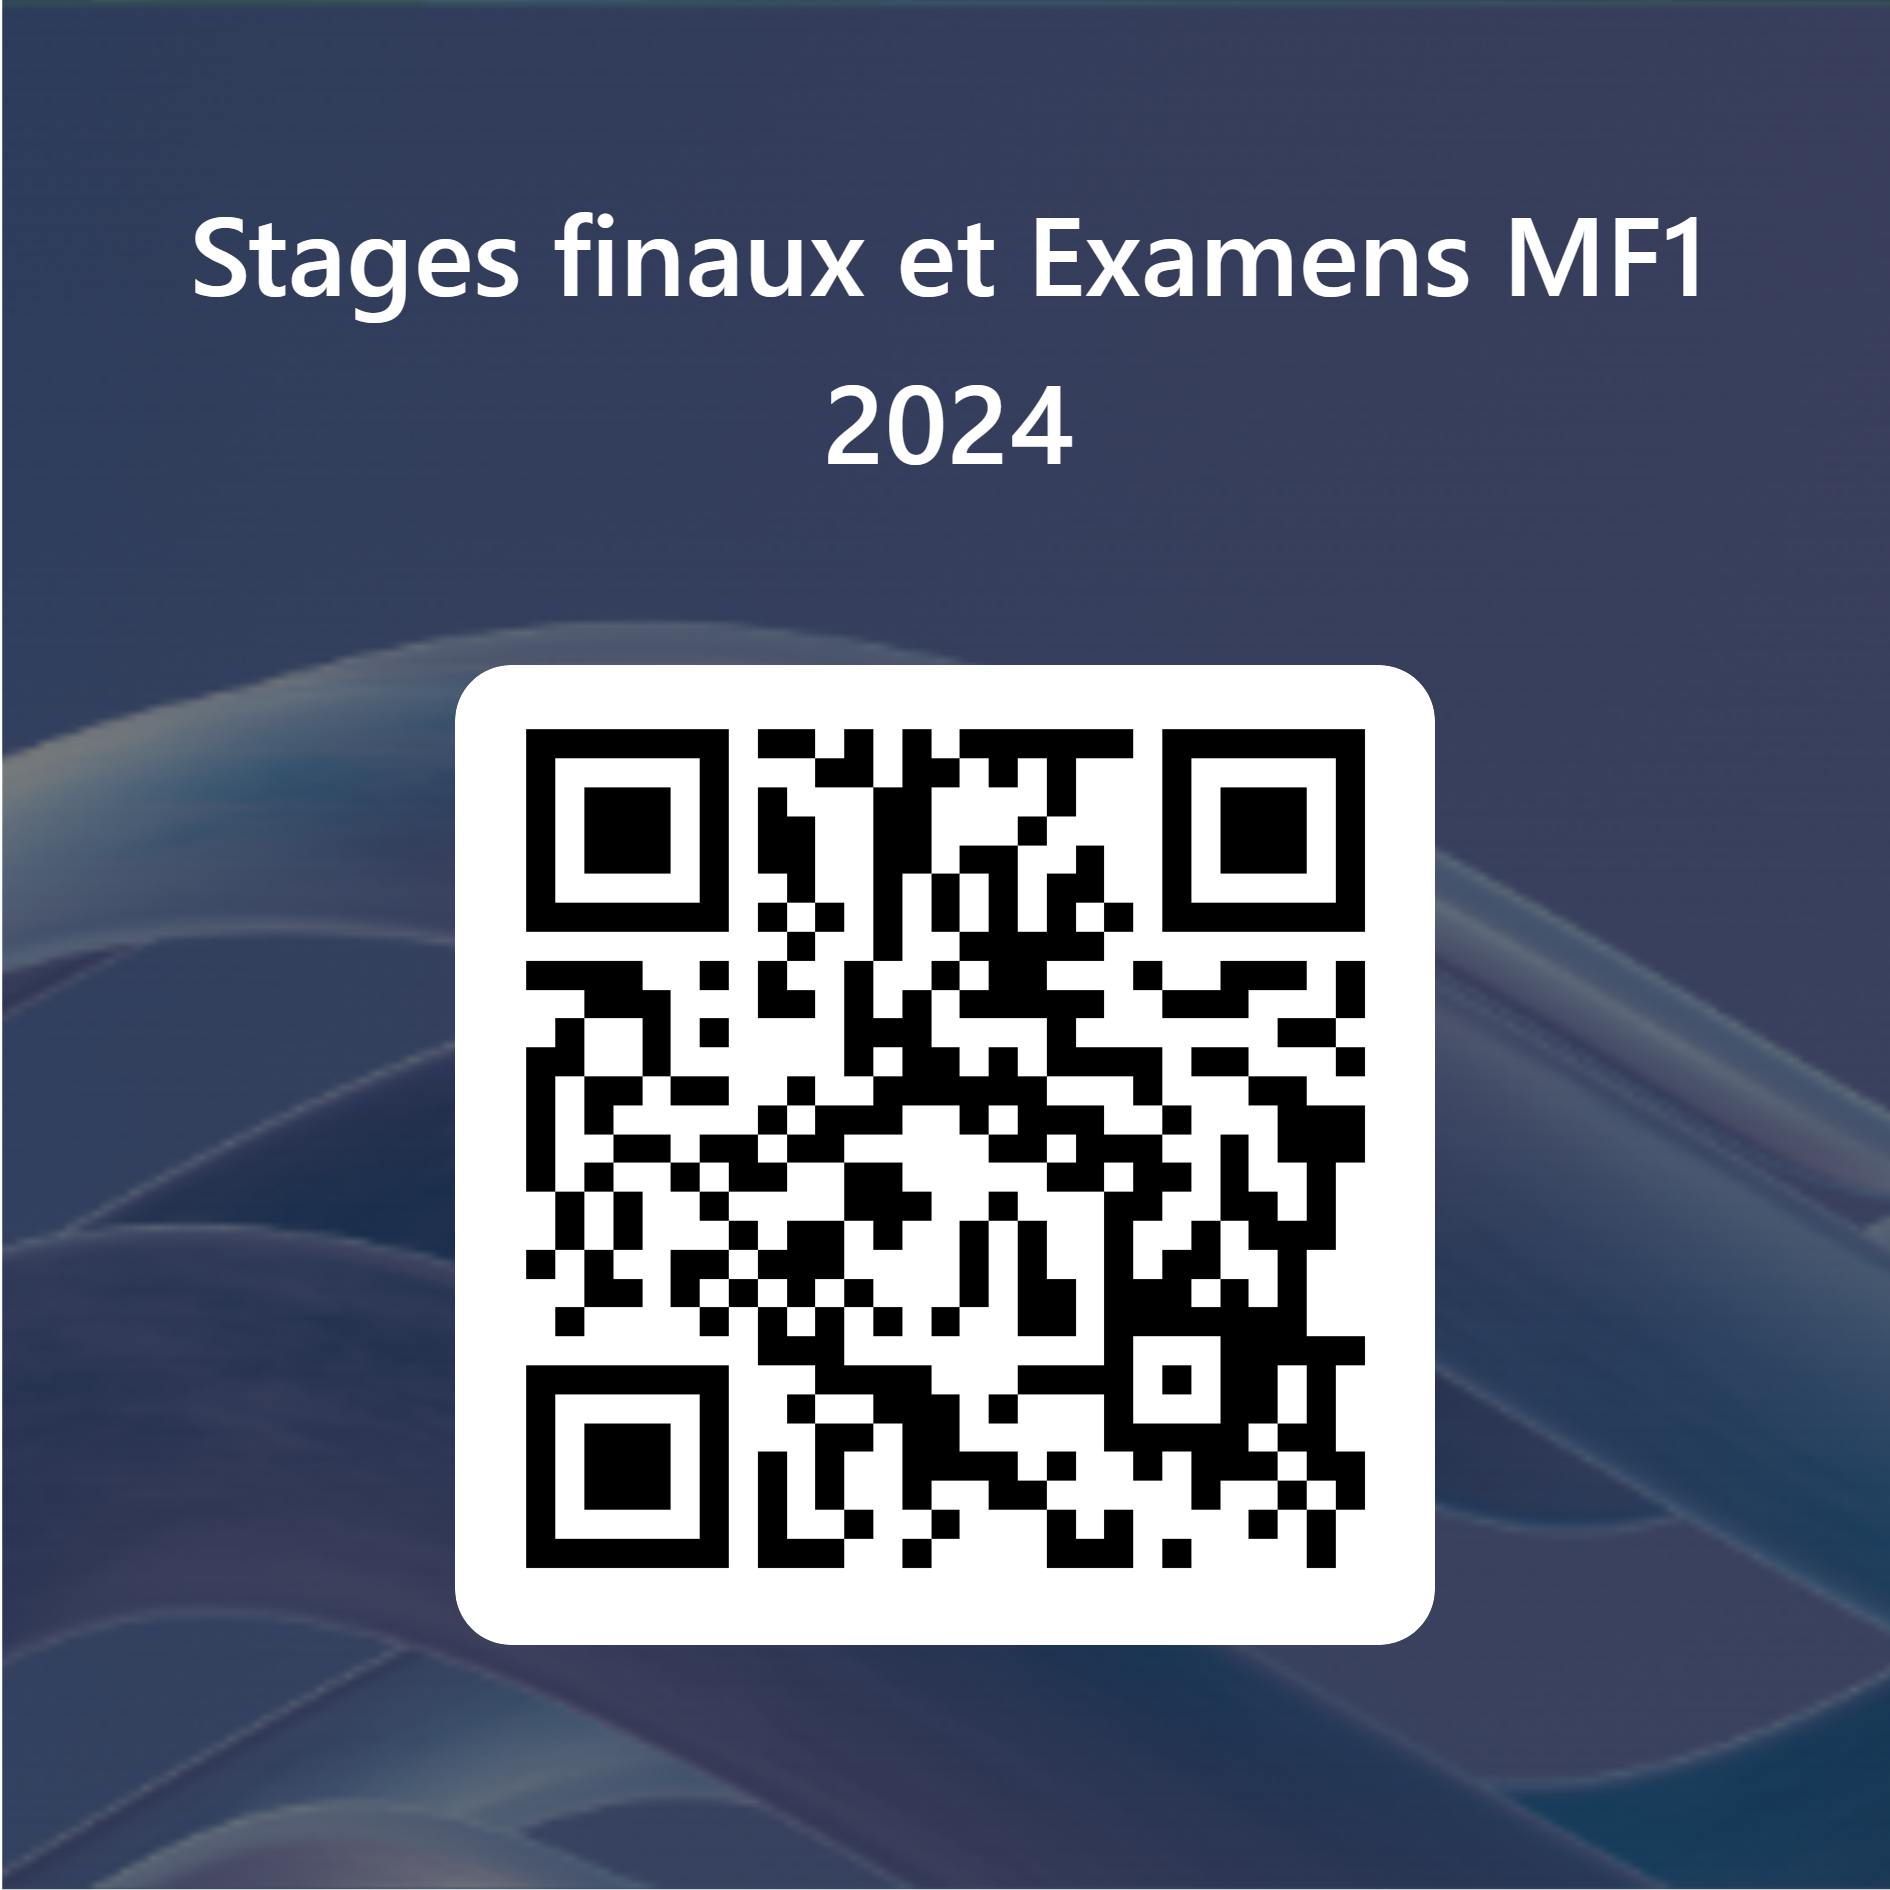 QRCode_pour_Stages_finaux_et_Examens_MF1_2024.png